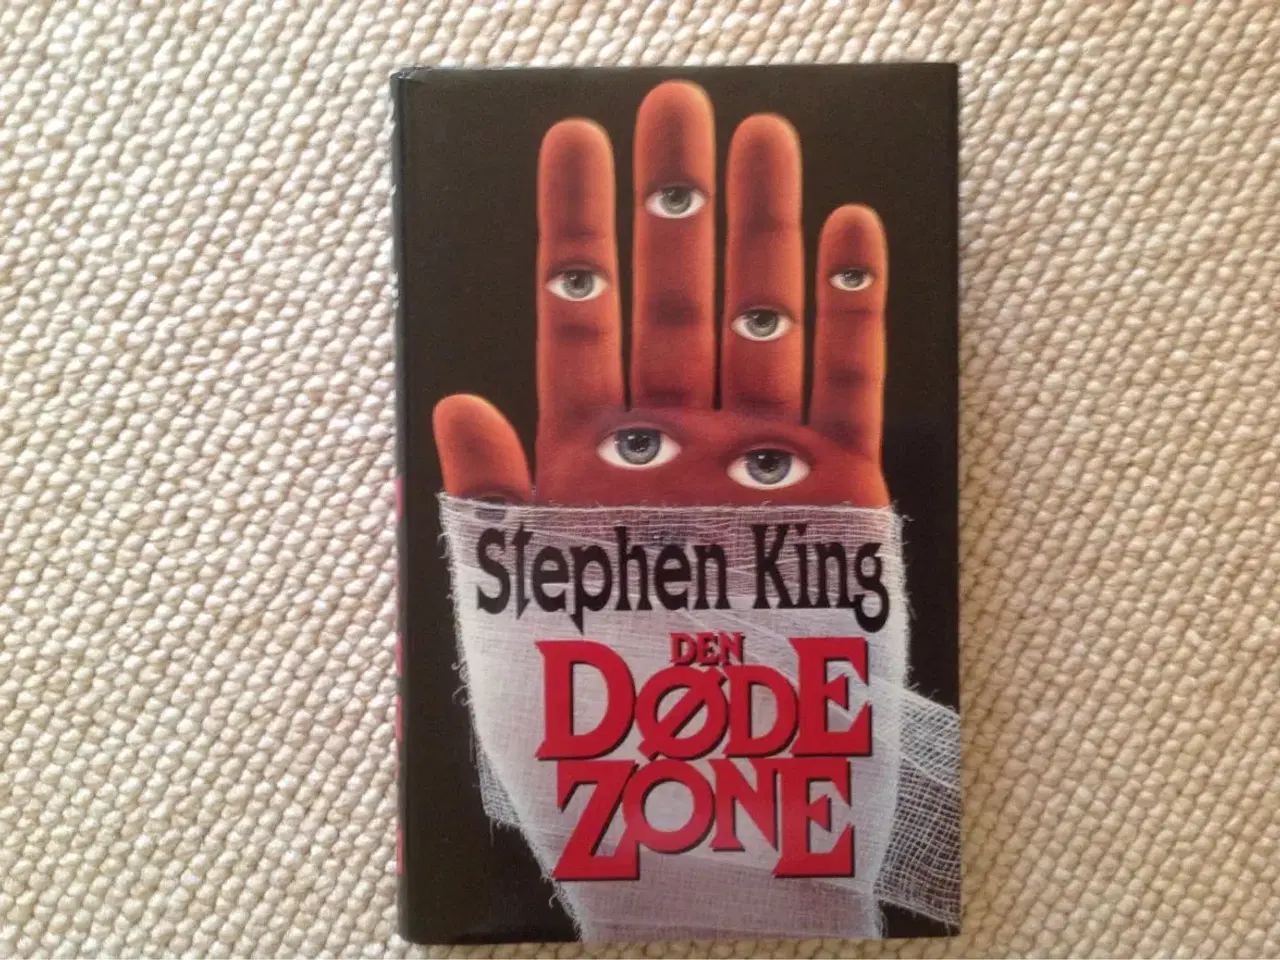 Billede 1 - Den døde zone" af Stephen King